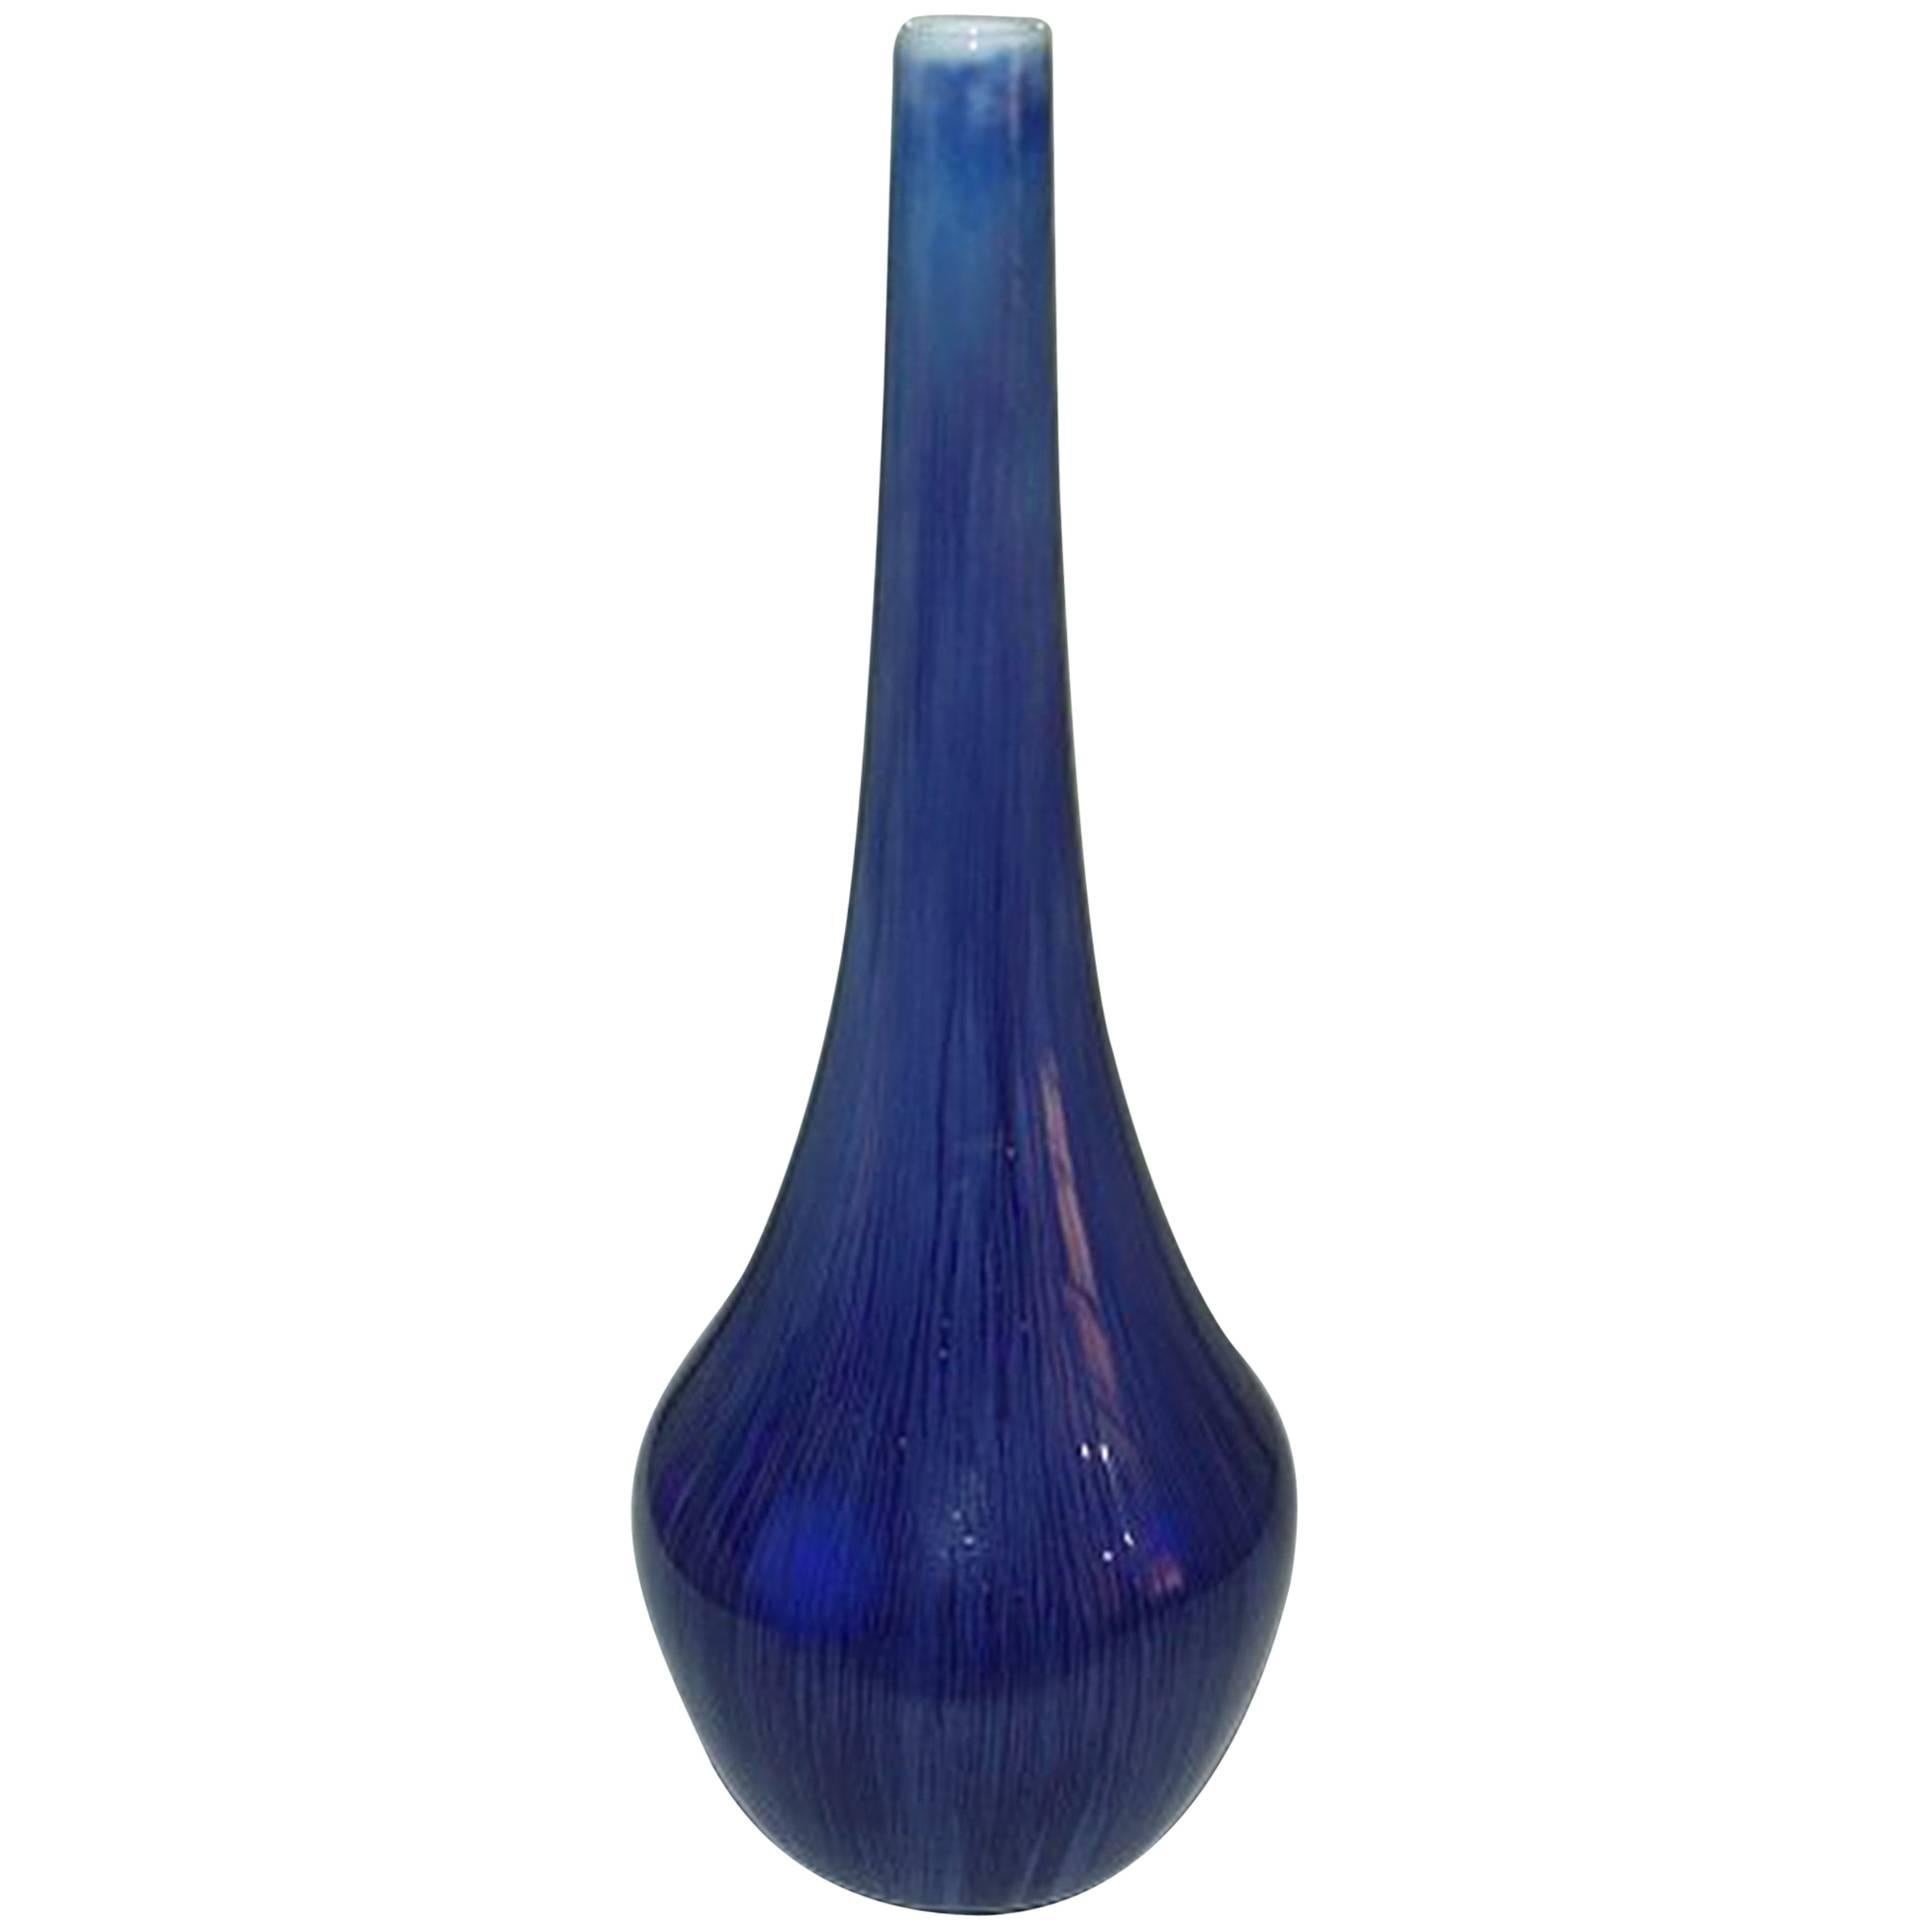 Royal Copenhagen Crystalline Glaze Vase by Paul Prochowsky, 27-1-1924